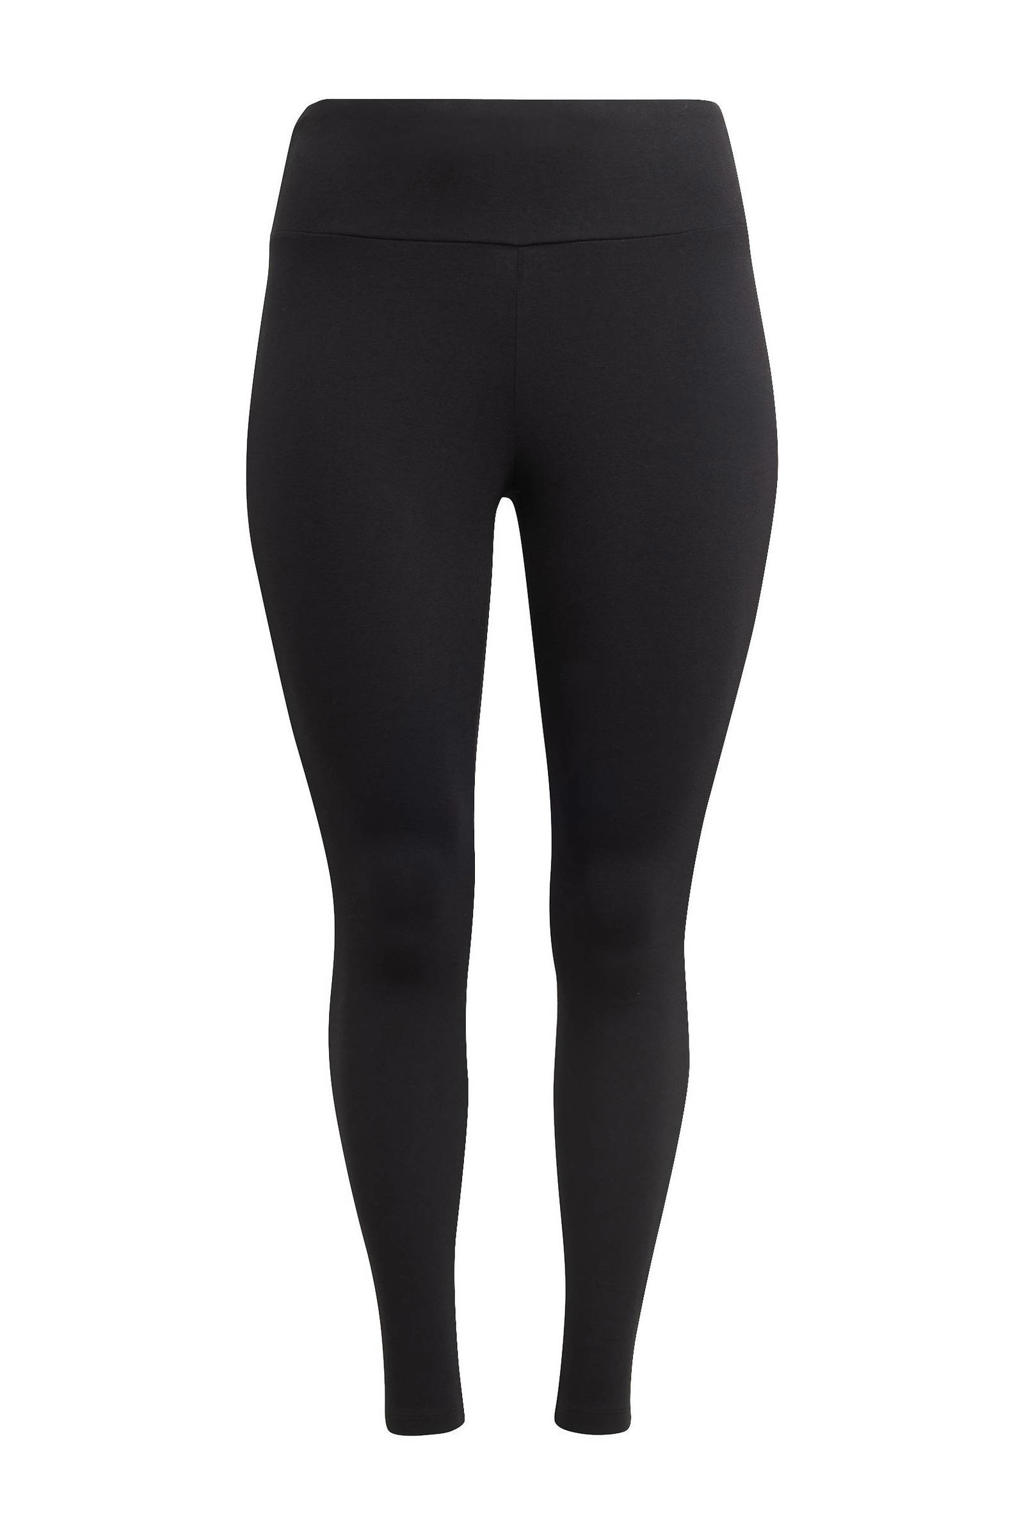 Zwarte dames adidas Originals Plus Size legging van katoen met slim fit, high waist en elastische tailleband